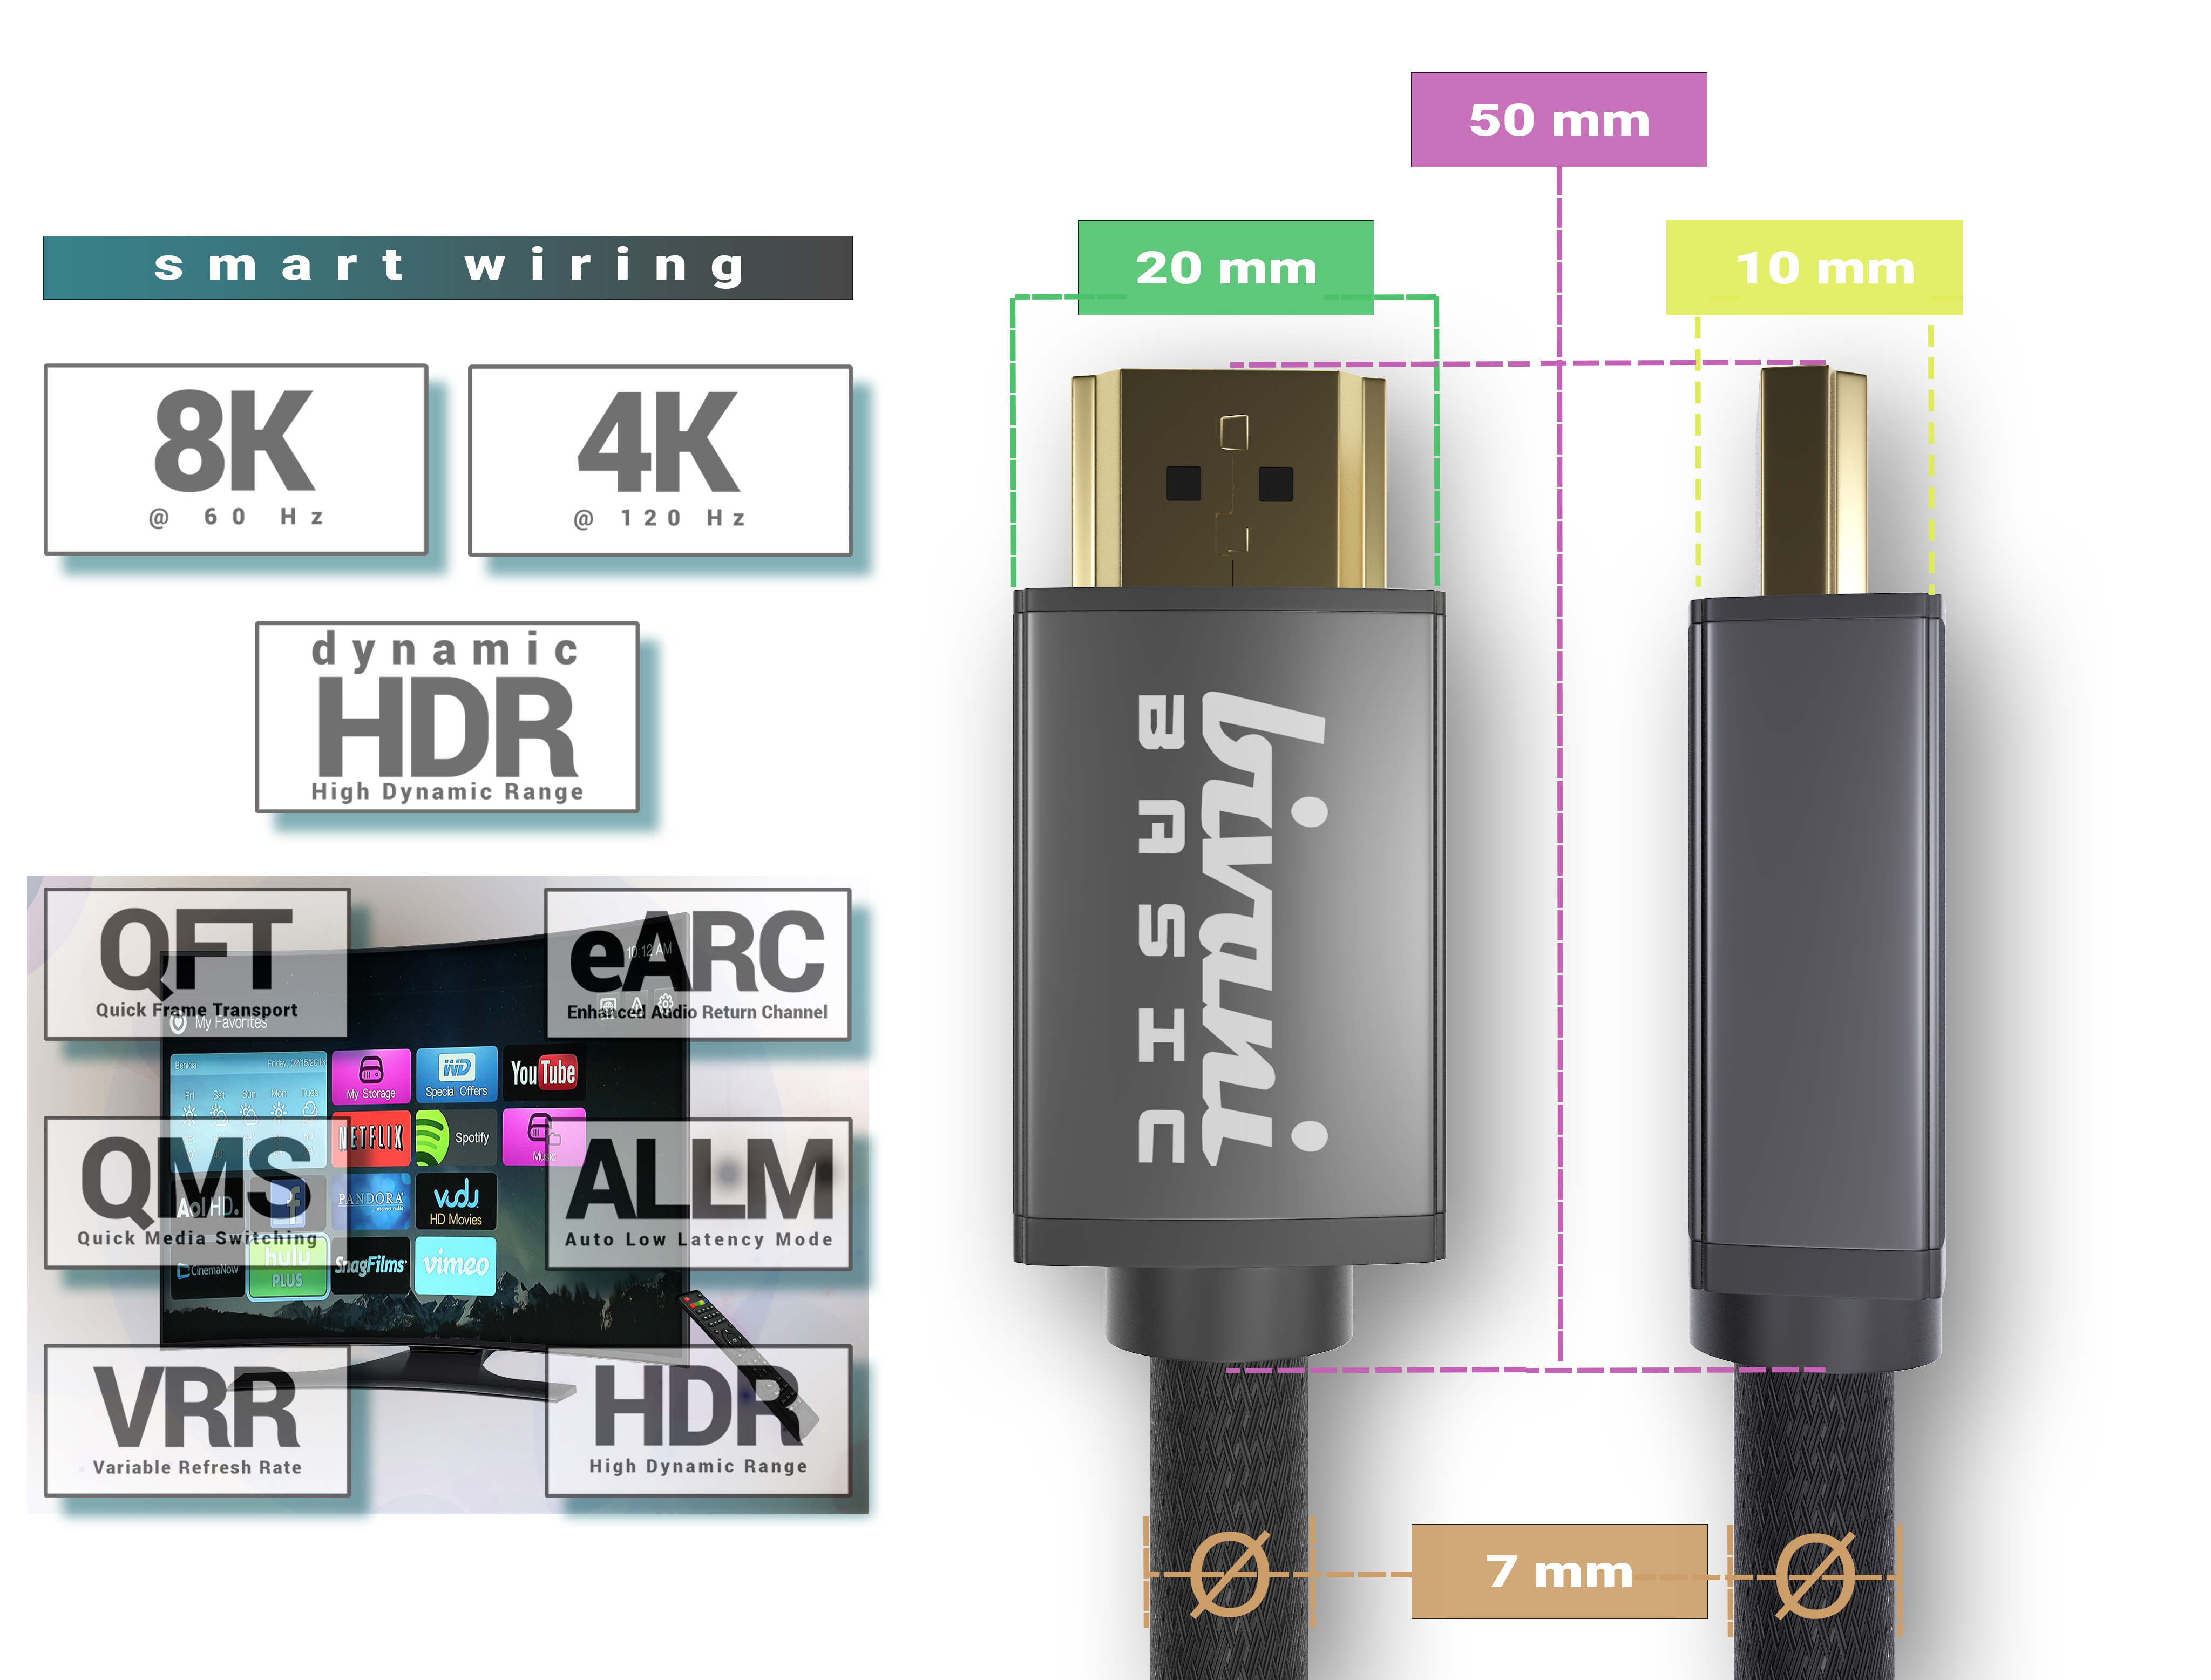 BIVANI 8K Basic - Kabel Gbps 8K 48 2.1a HDMI Series Kabel 2.1a